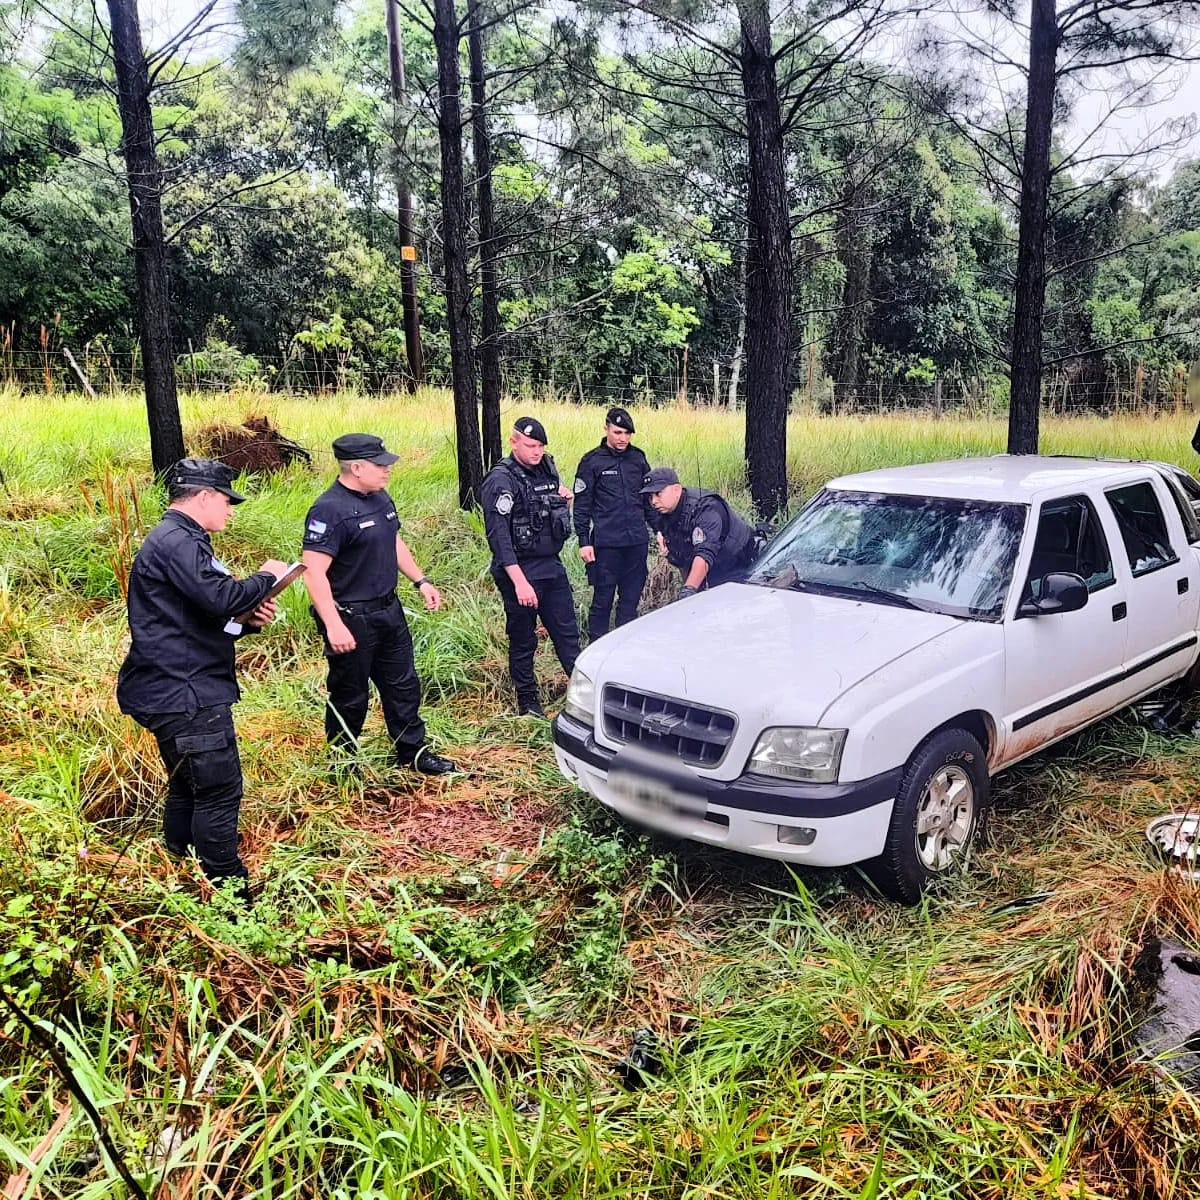 En un rápido despliegue policial en la zona rural recuperaron una camioneta robada horas antes imagen-1